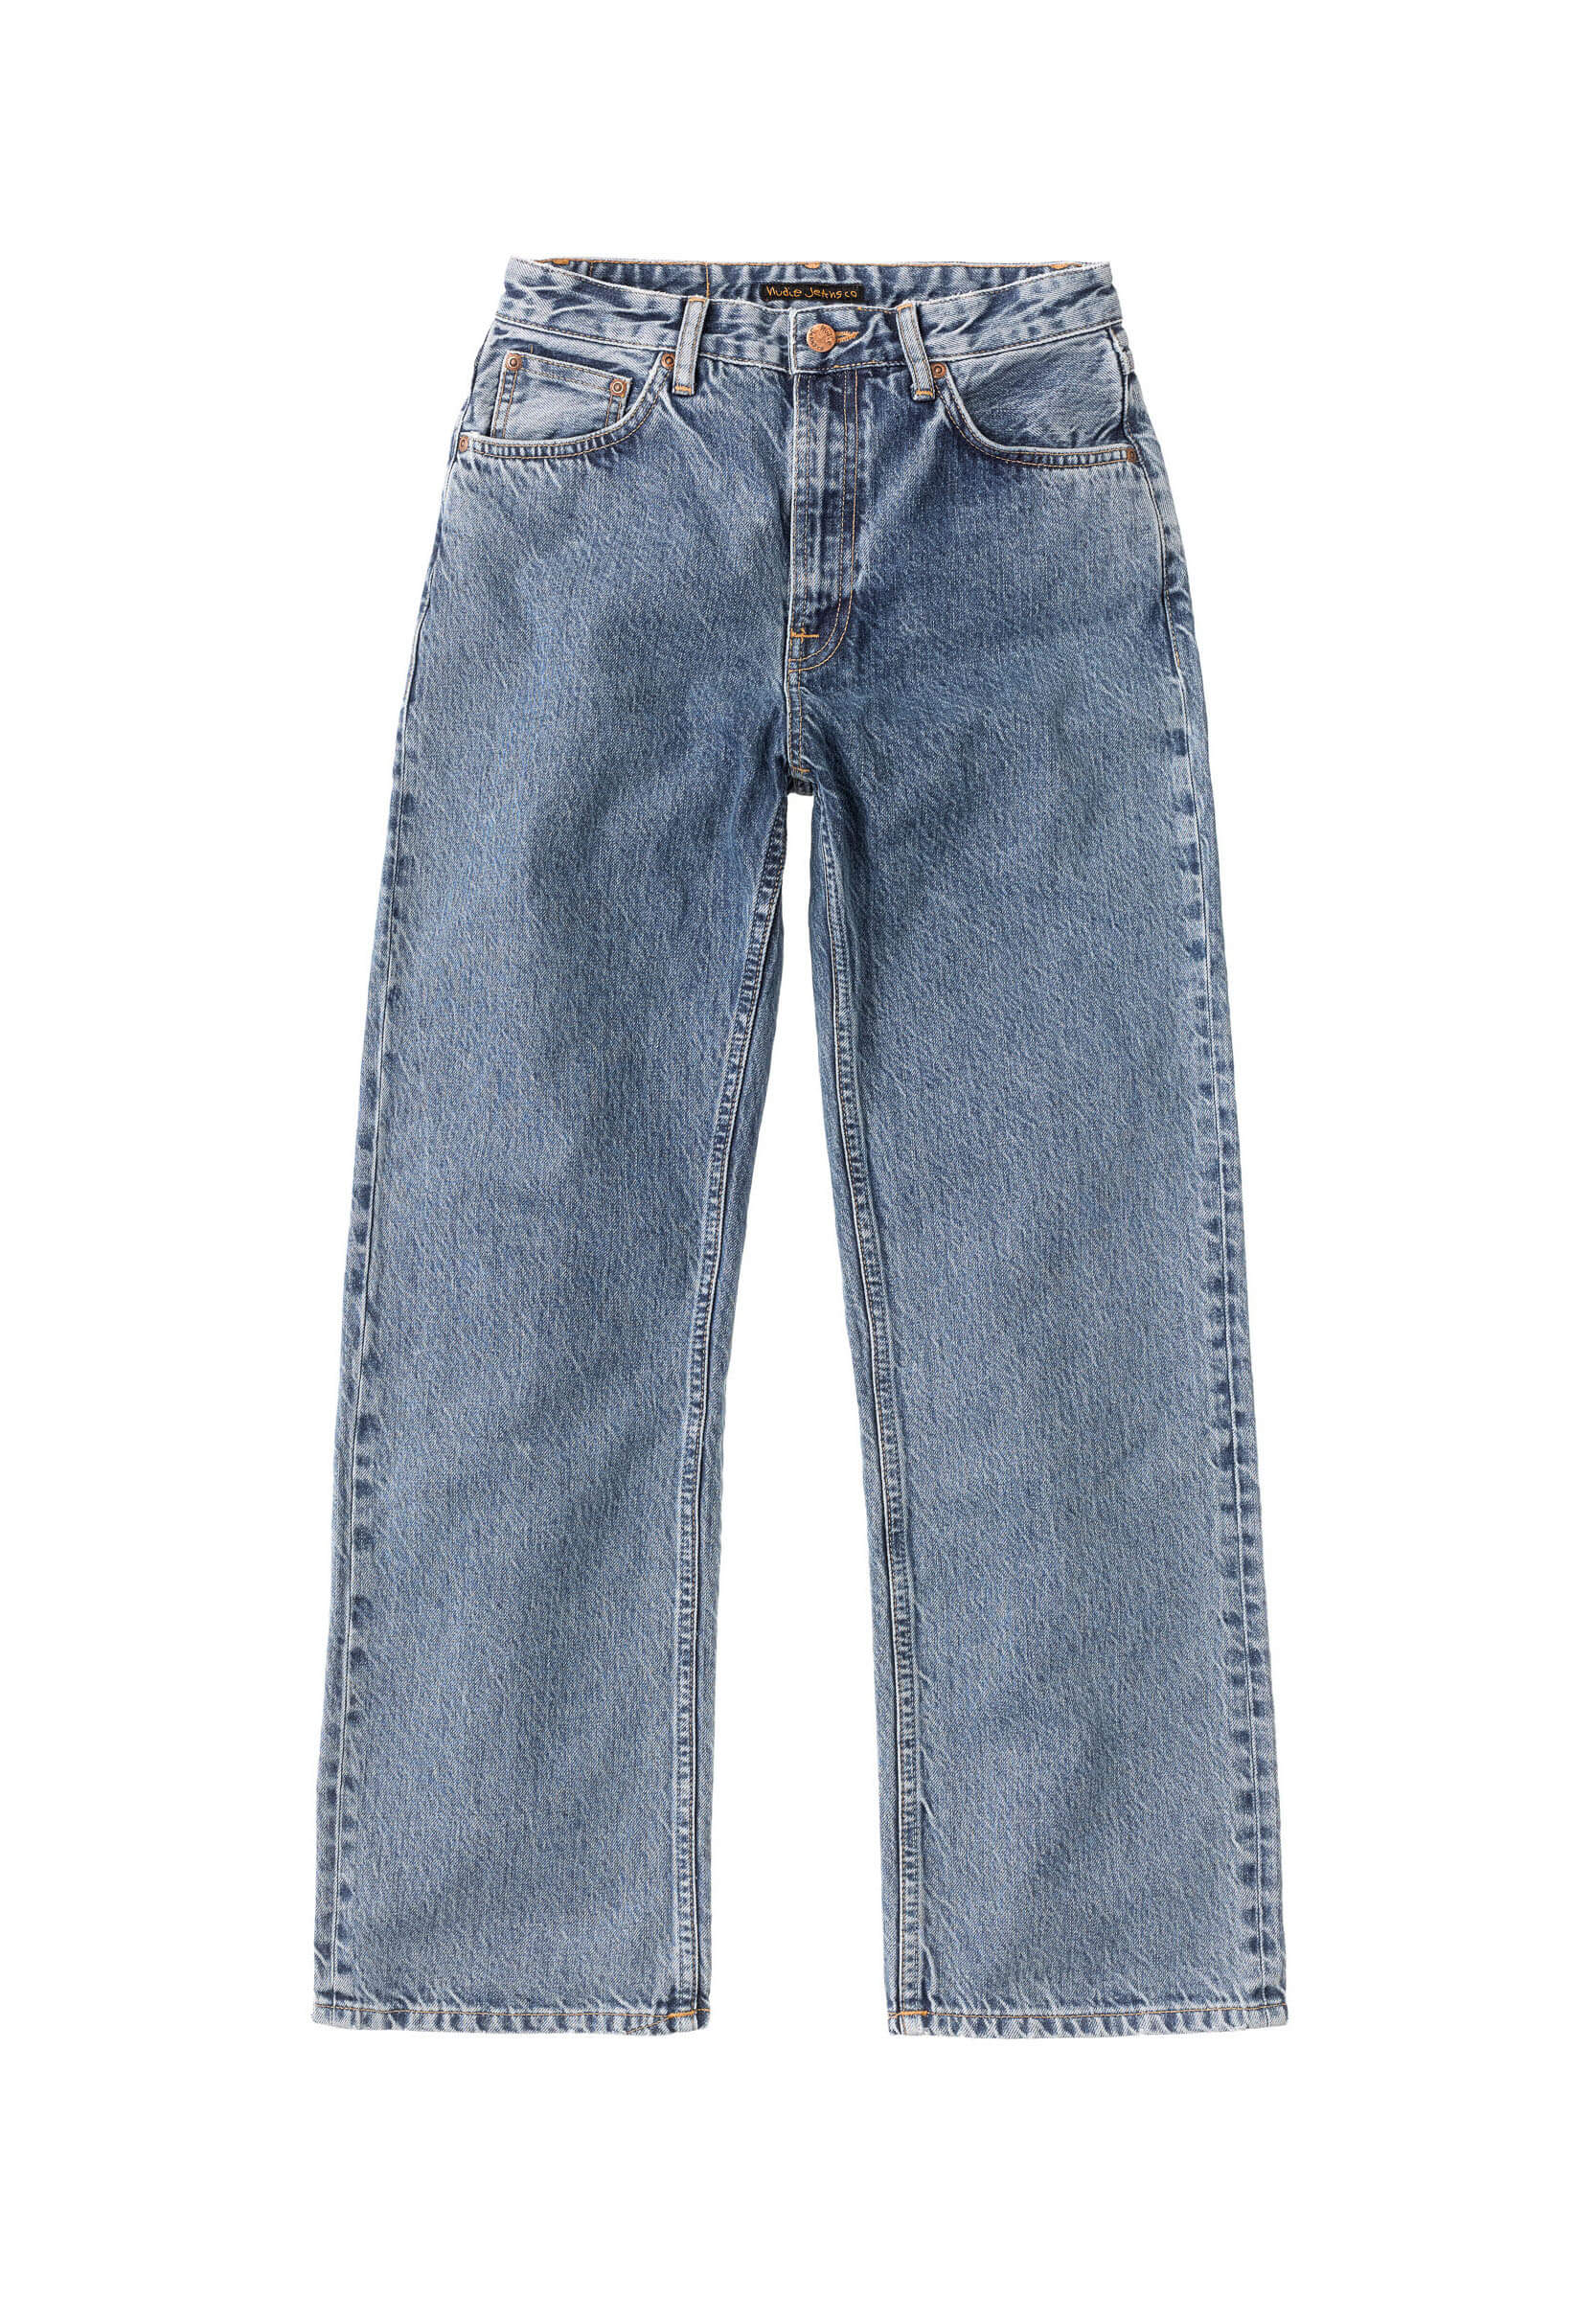 NUDIE JEANS Jeans Clean Eileen gentle fade 31/30